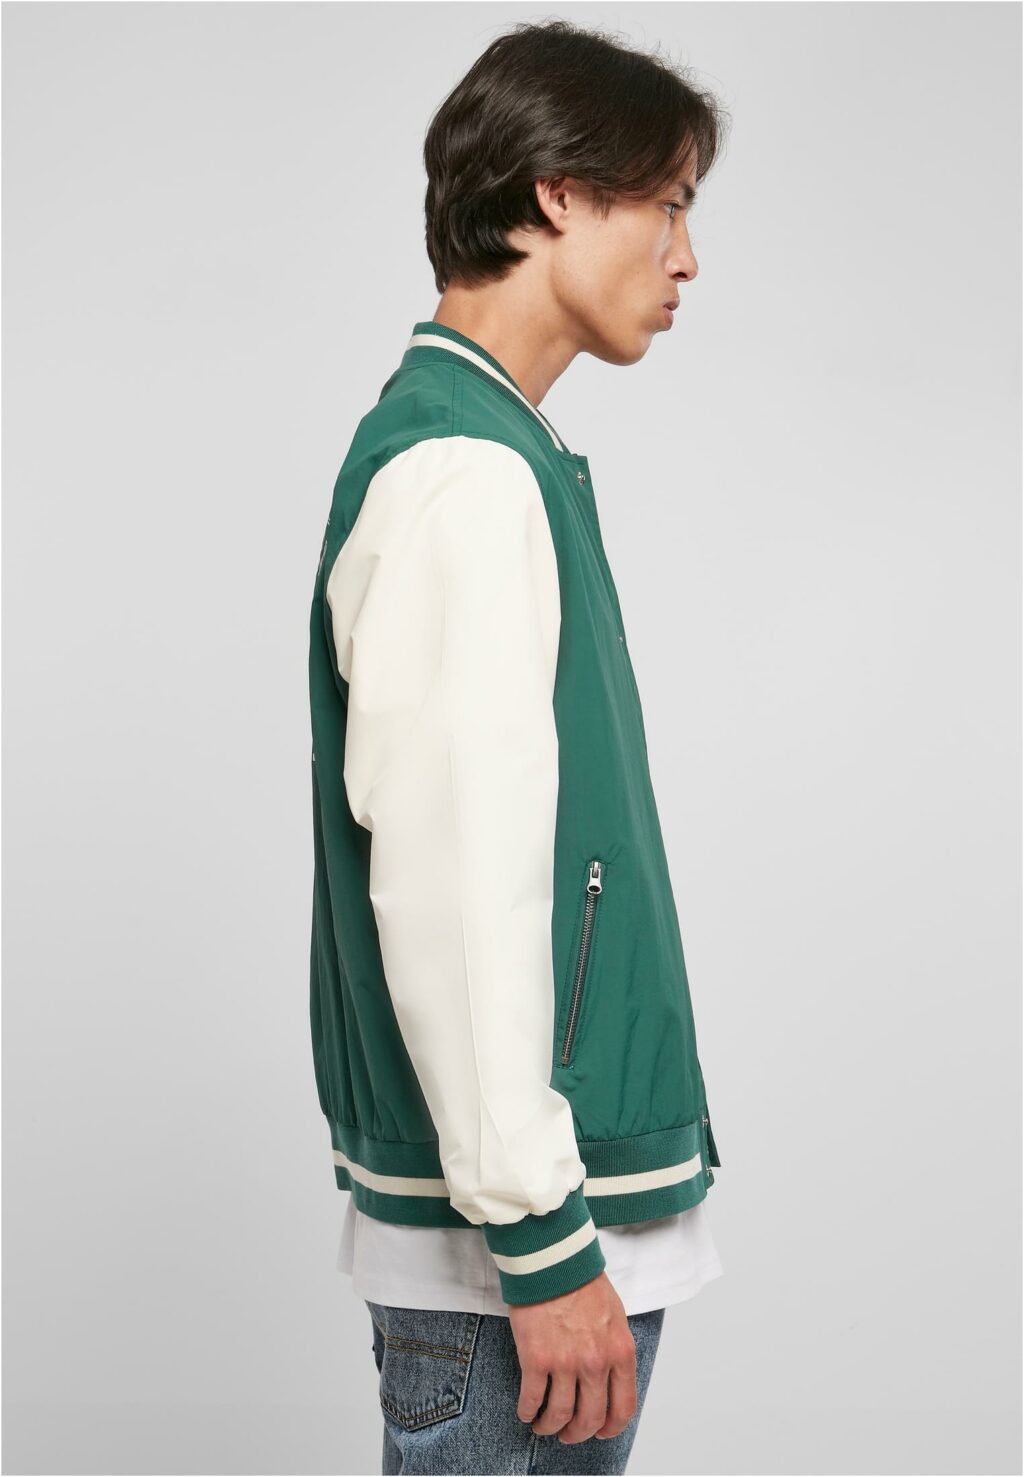 Starter Nylon College Jacket darkfreshgreen/palewhite ST352